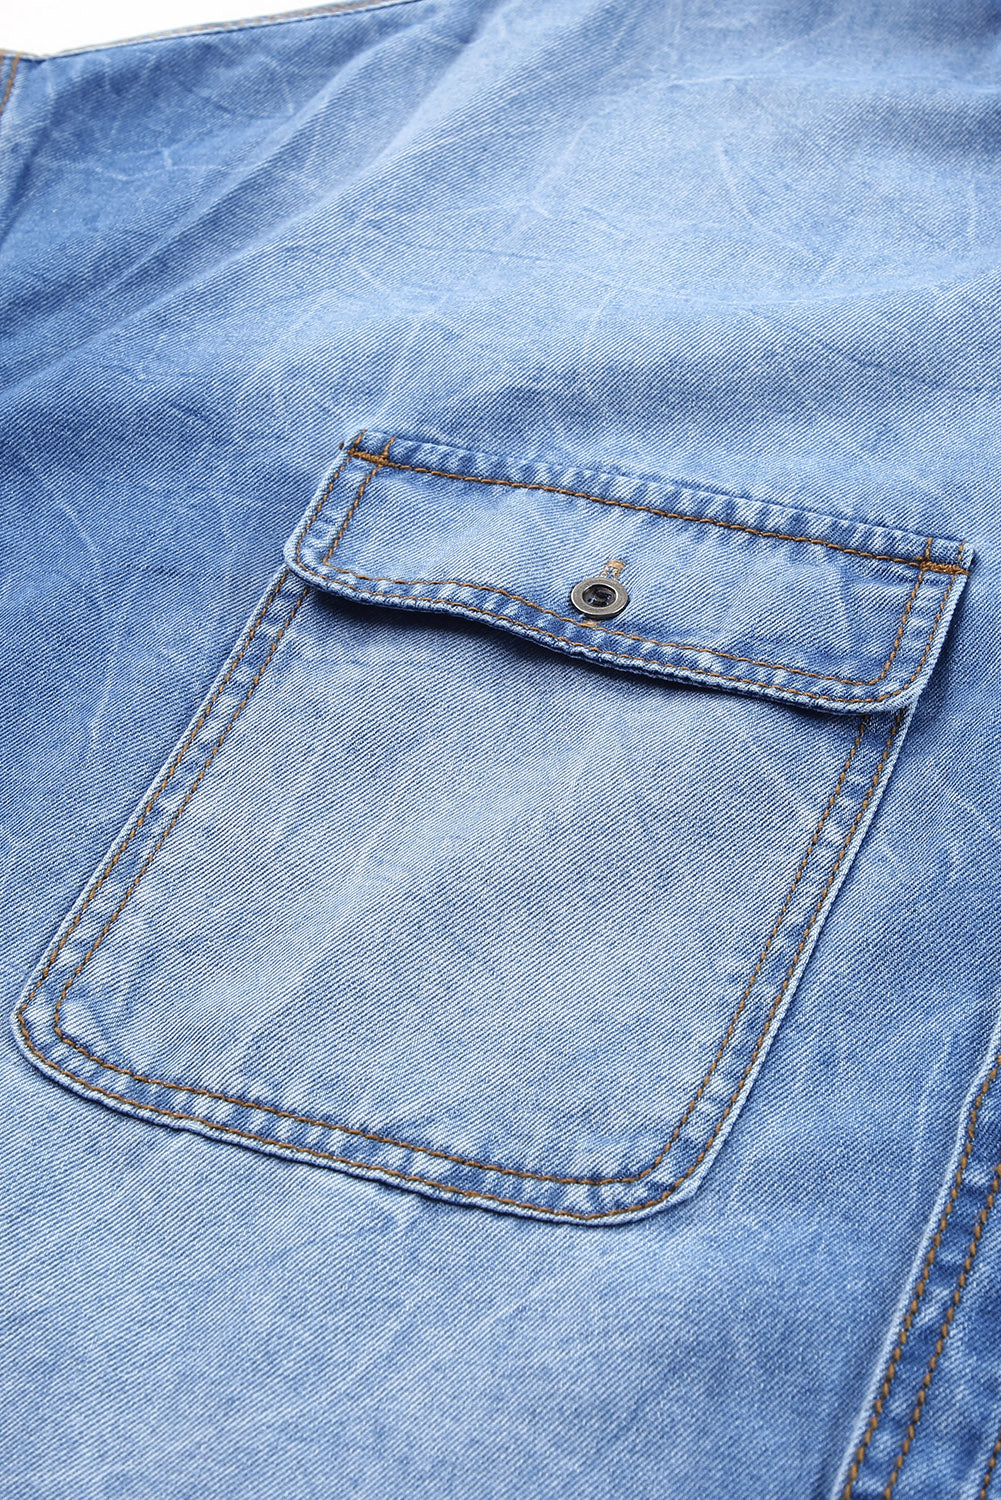 Veste en jean bleu ciel avec poches à rabat et ourlet brut